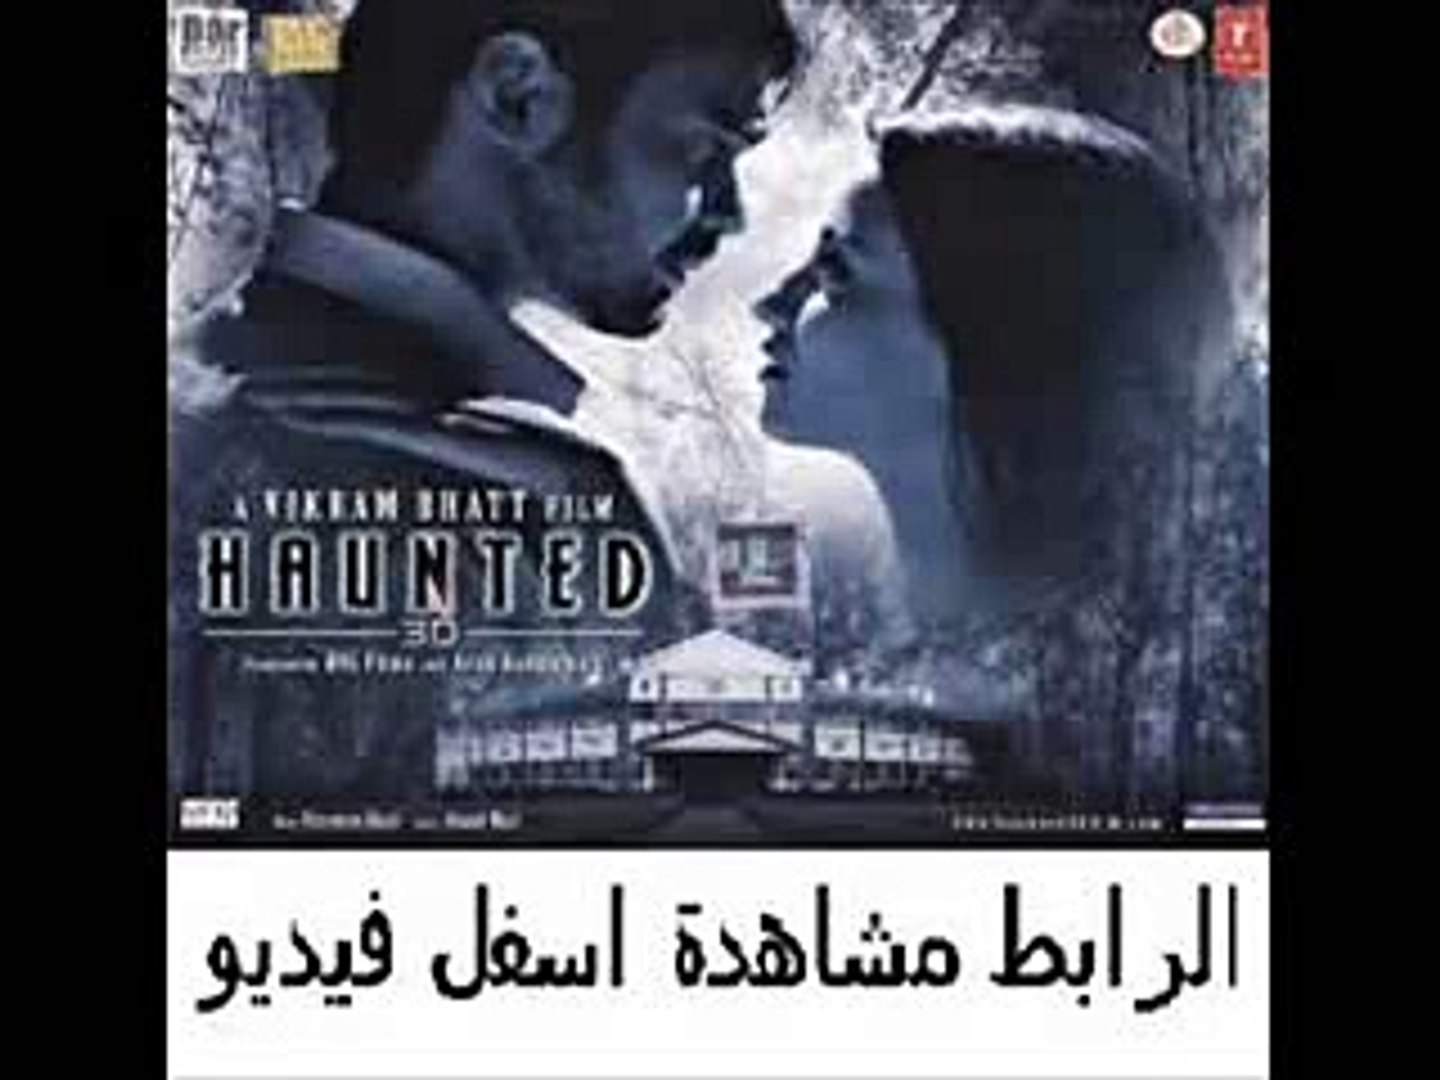 فيلم الأثارة والرعب الهندى Haunted 3d 2011 مترجم Video Dailymotion